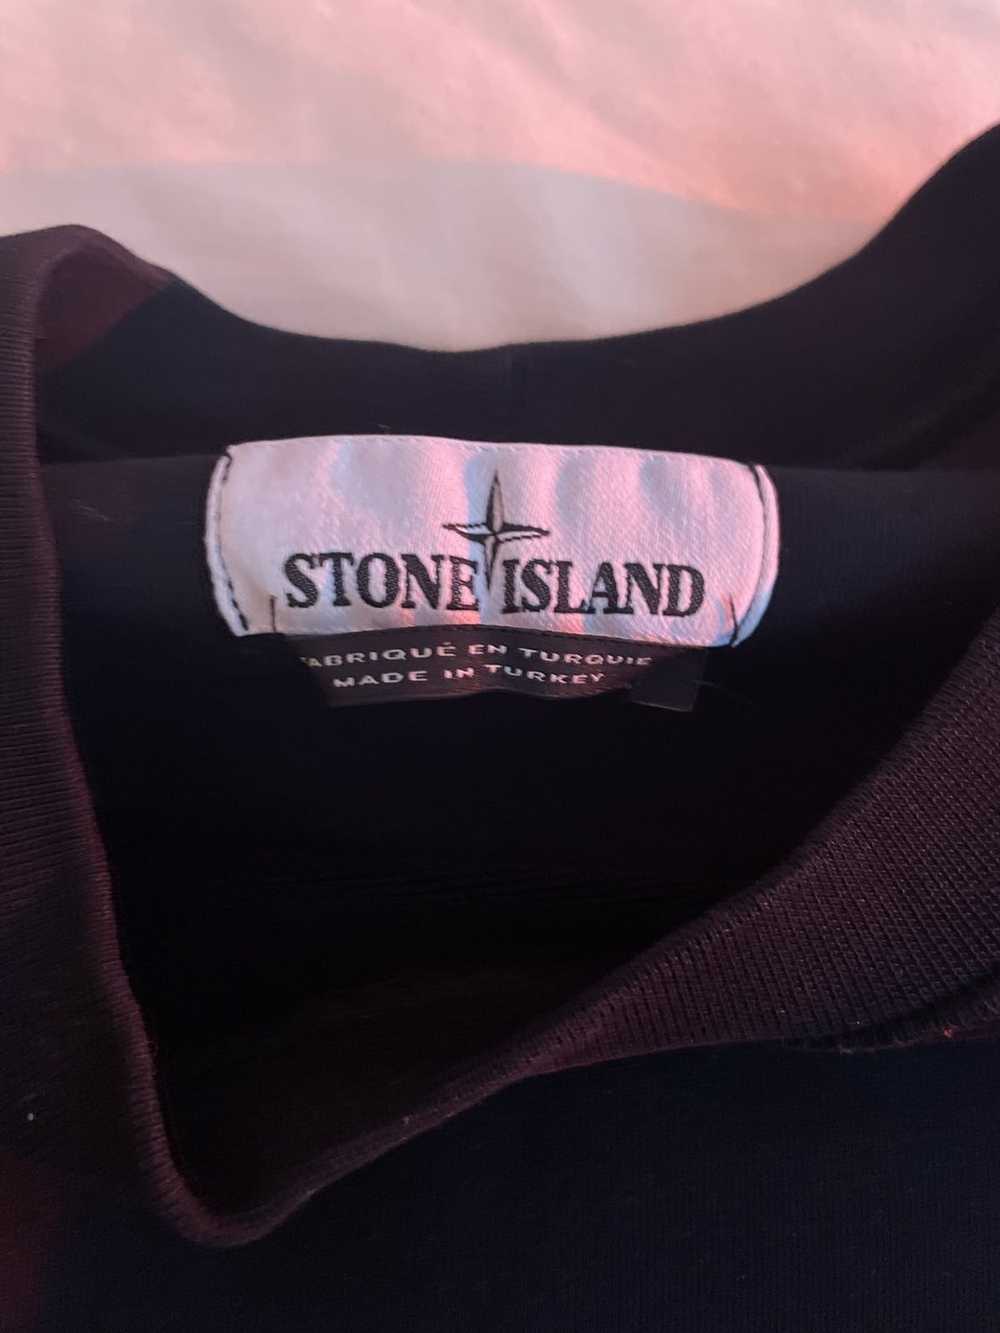 Stone Island stone island sweatshirt size M - image 2